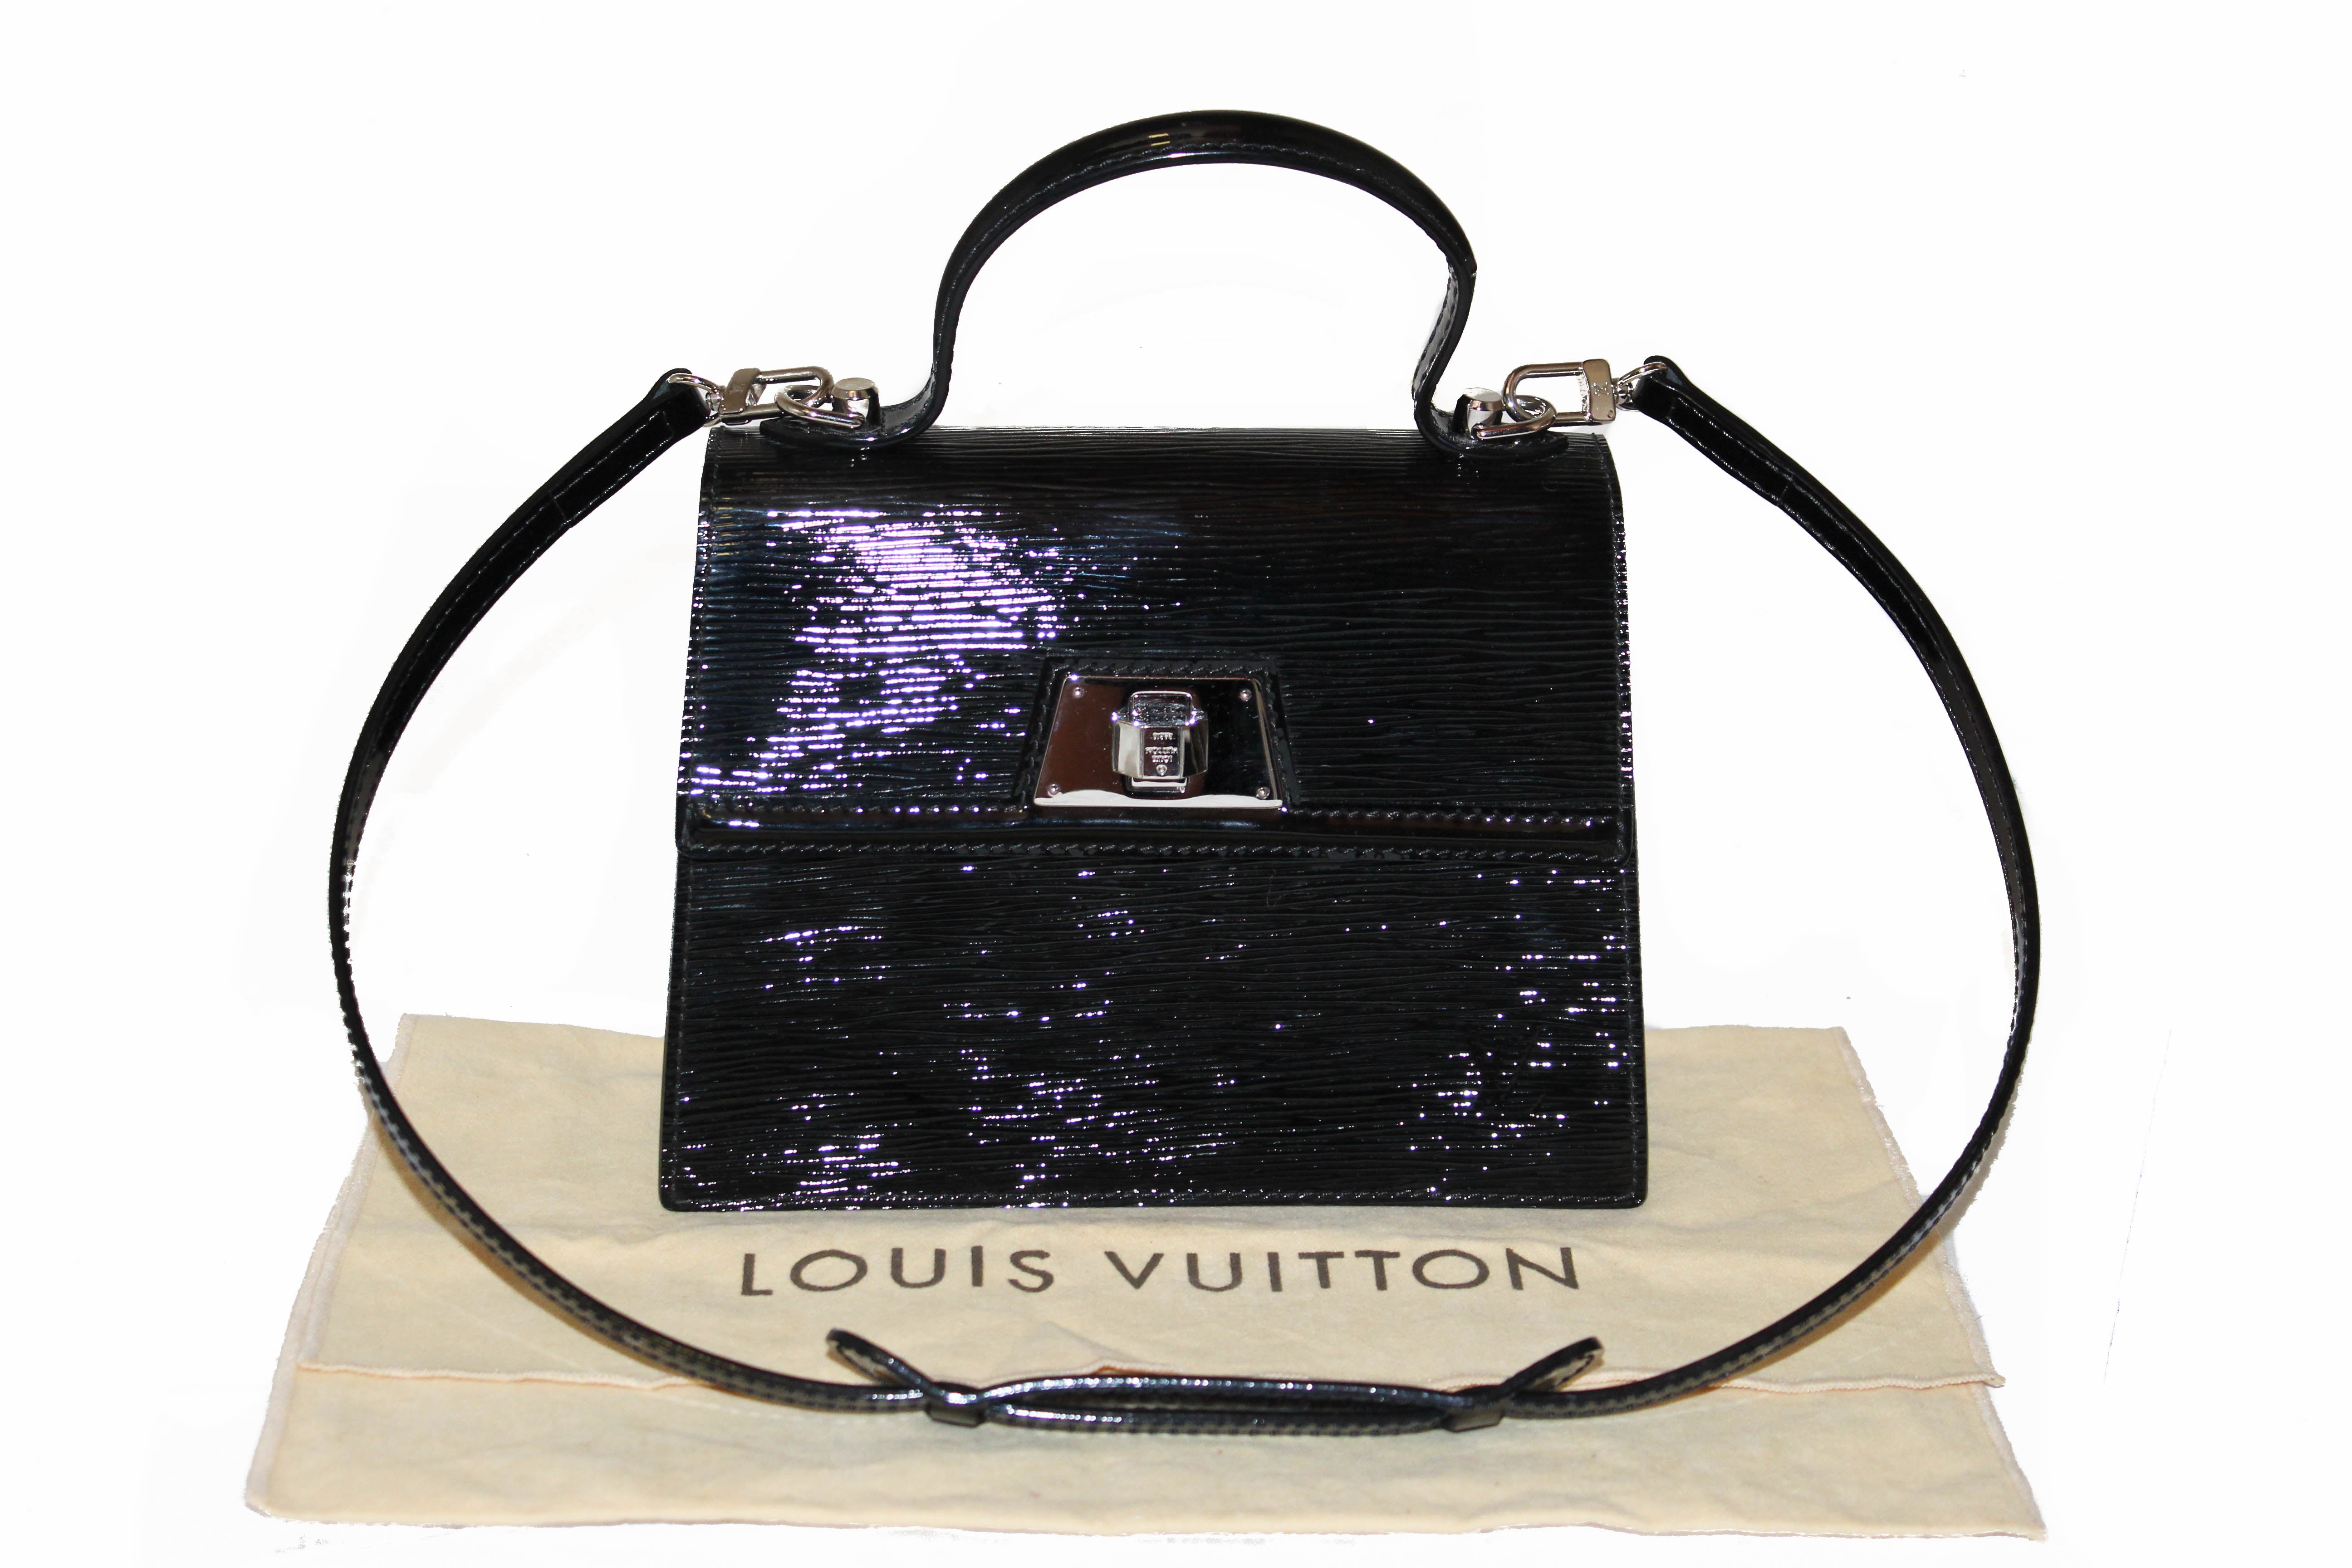 BRAND NEW Authentic Louis Vuitton Black Electric Epi Twist MM